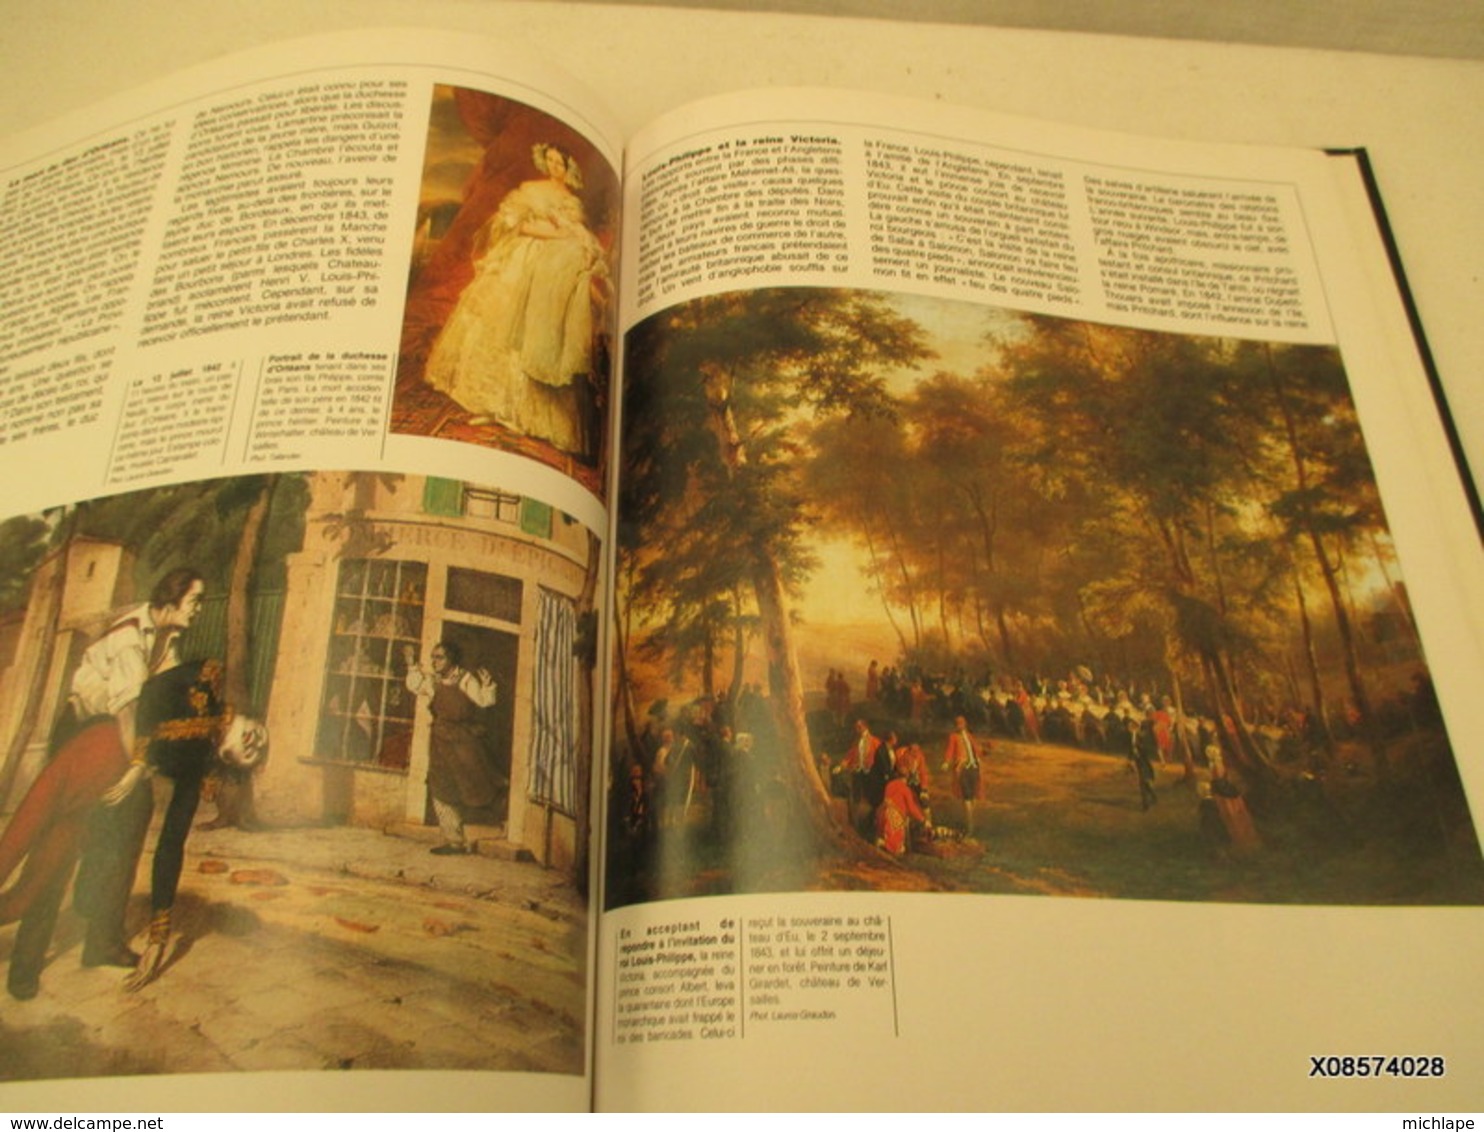 LIVRE  - restauration et revolution  1815 - 1851 -  edition 1988 format 23 cm X 30 cm - 172 pages  tres bon etat